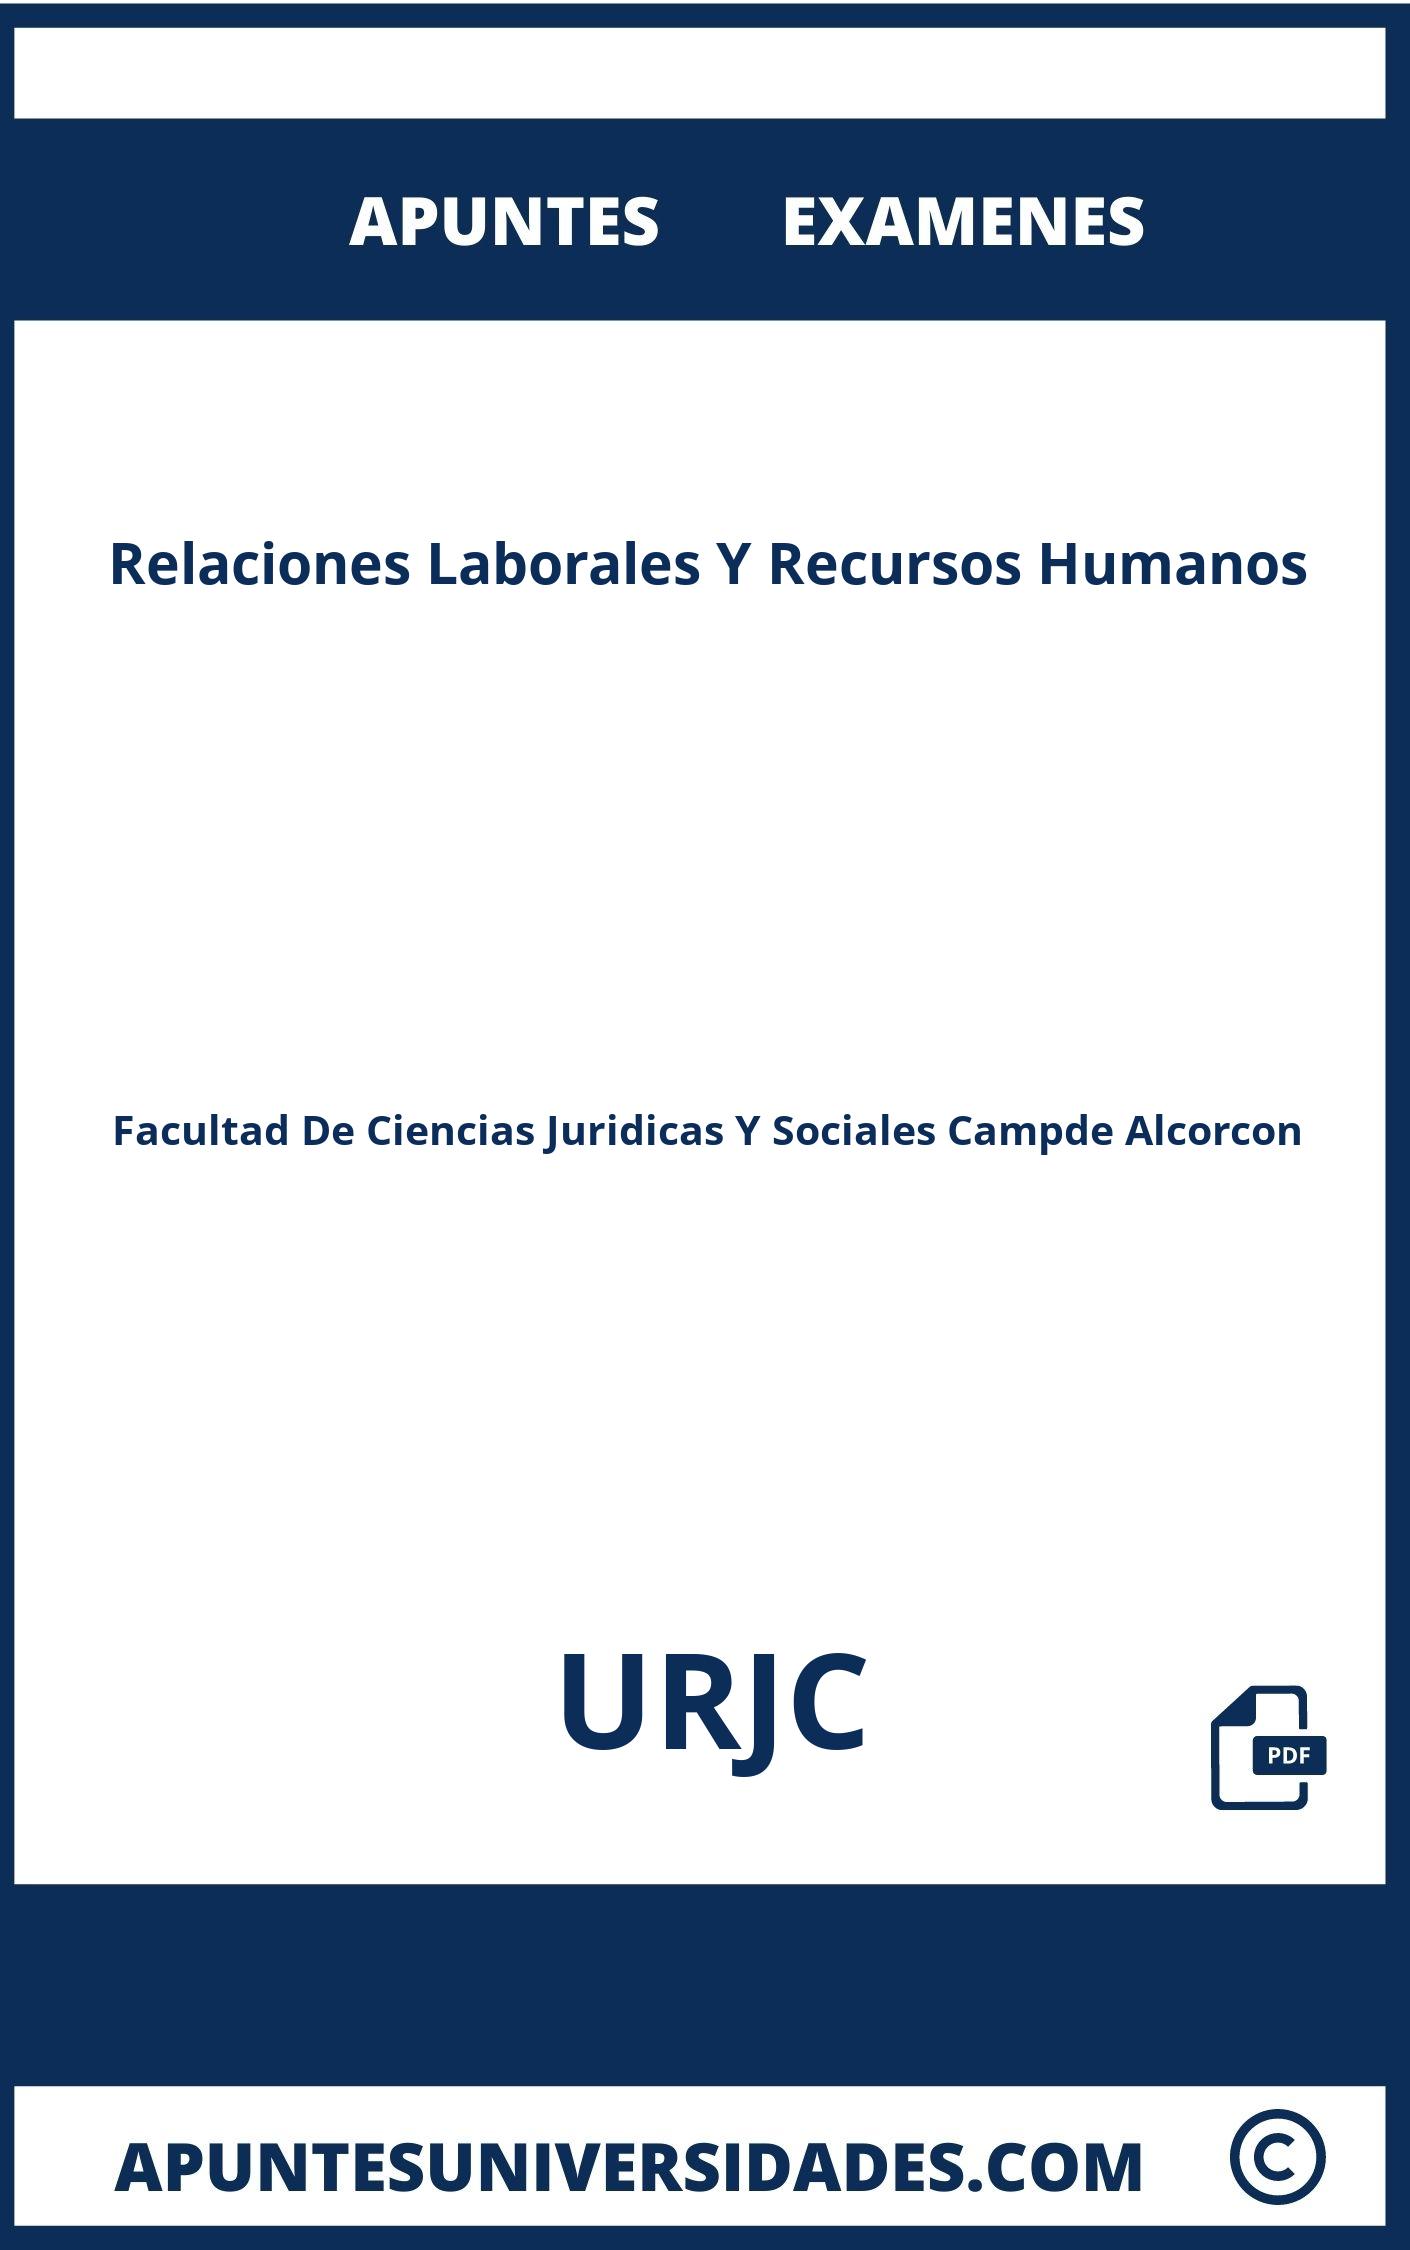 Relaciones Laborales Y Recursos Humanos URJC Examenes Apuntes